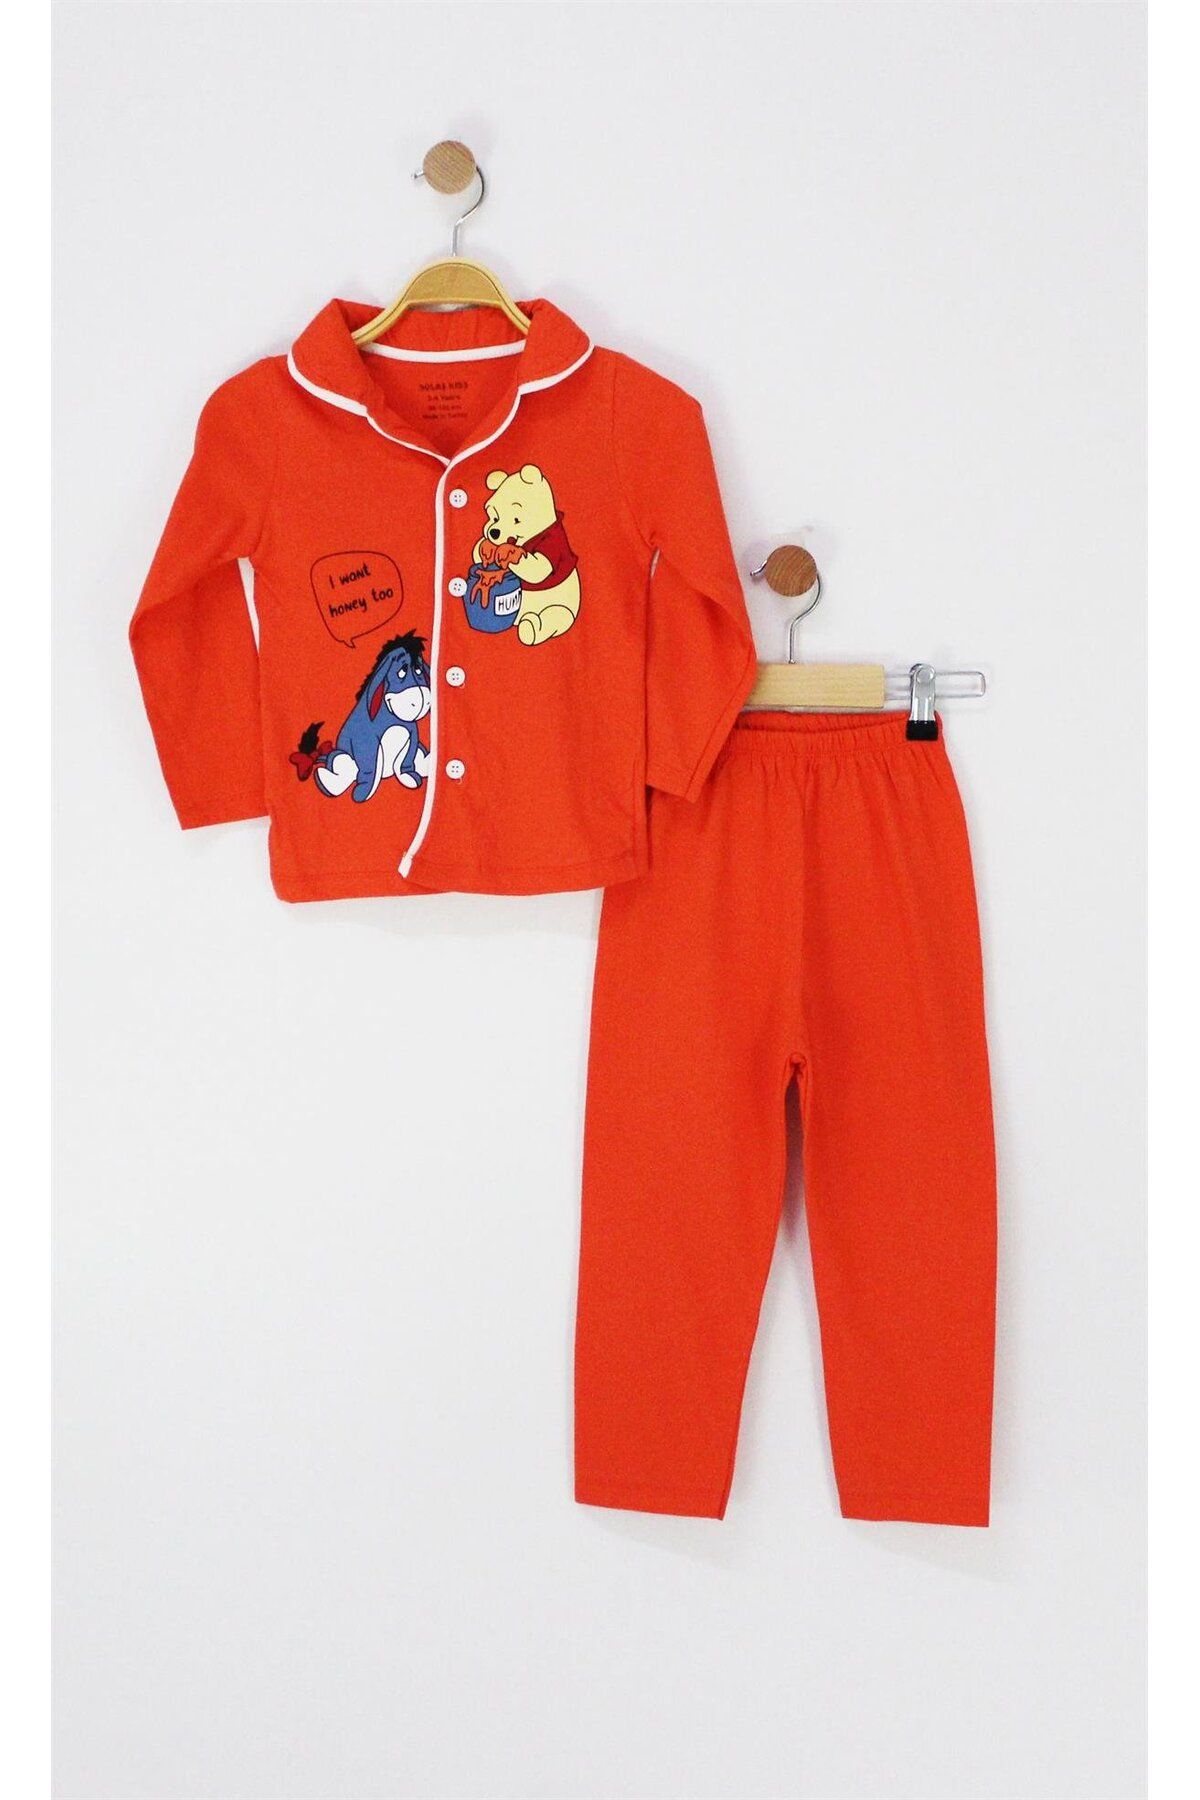 TRENDİMİZBİR Winnie The Pooh Baskılı Düğmeli Pijama Takımı